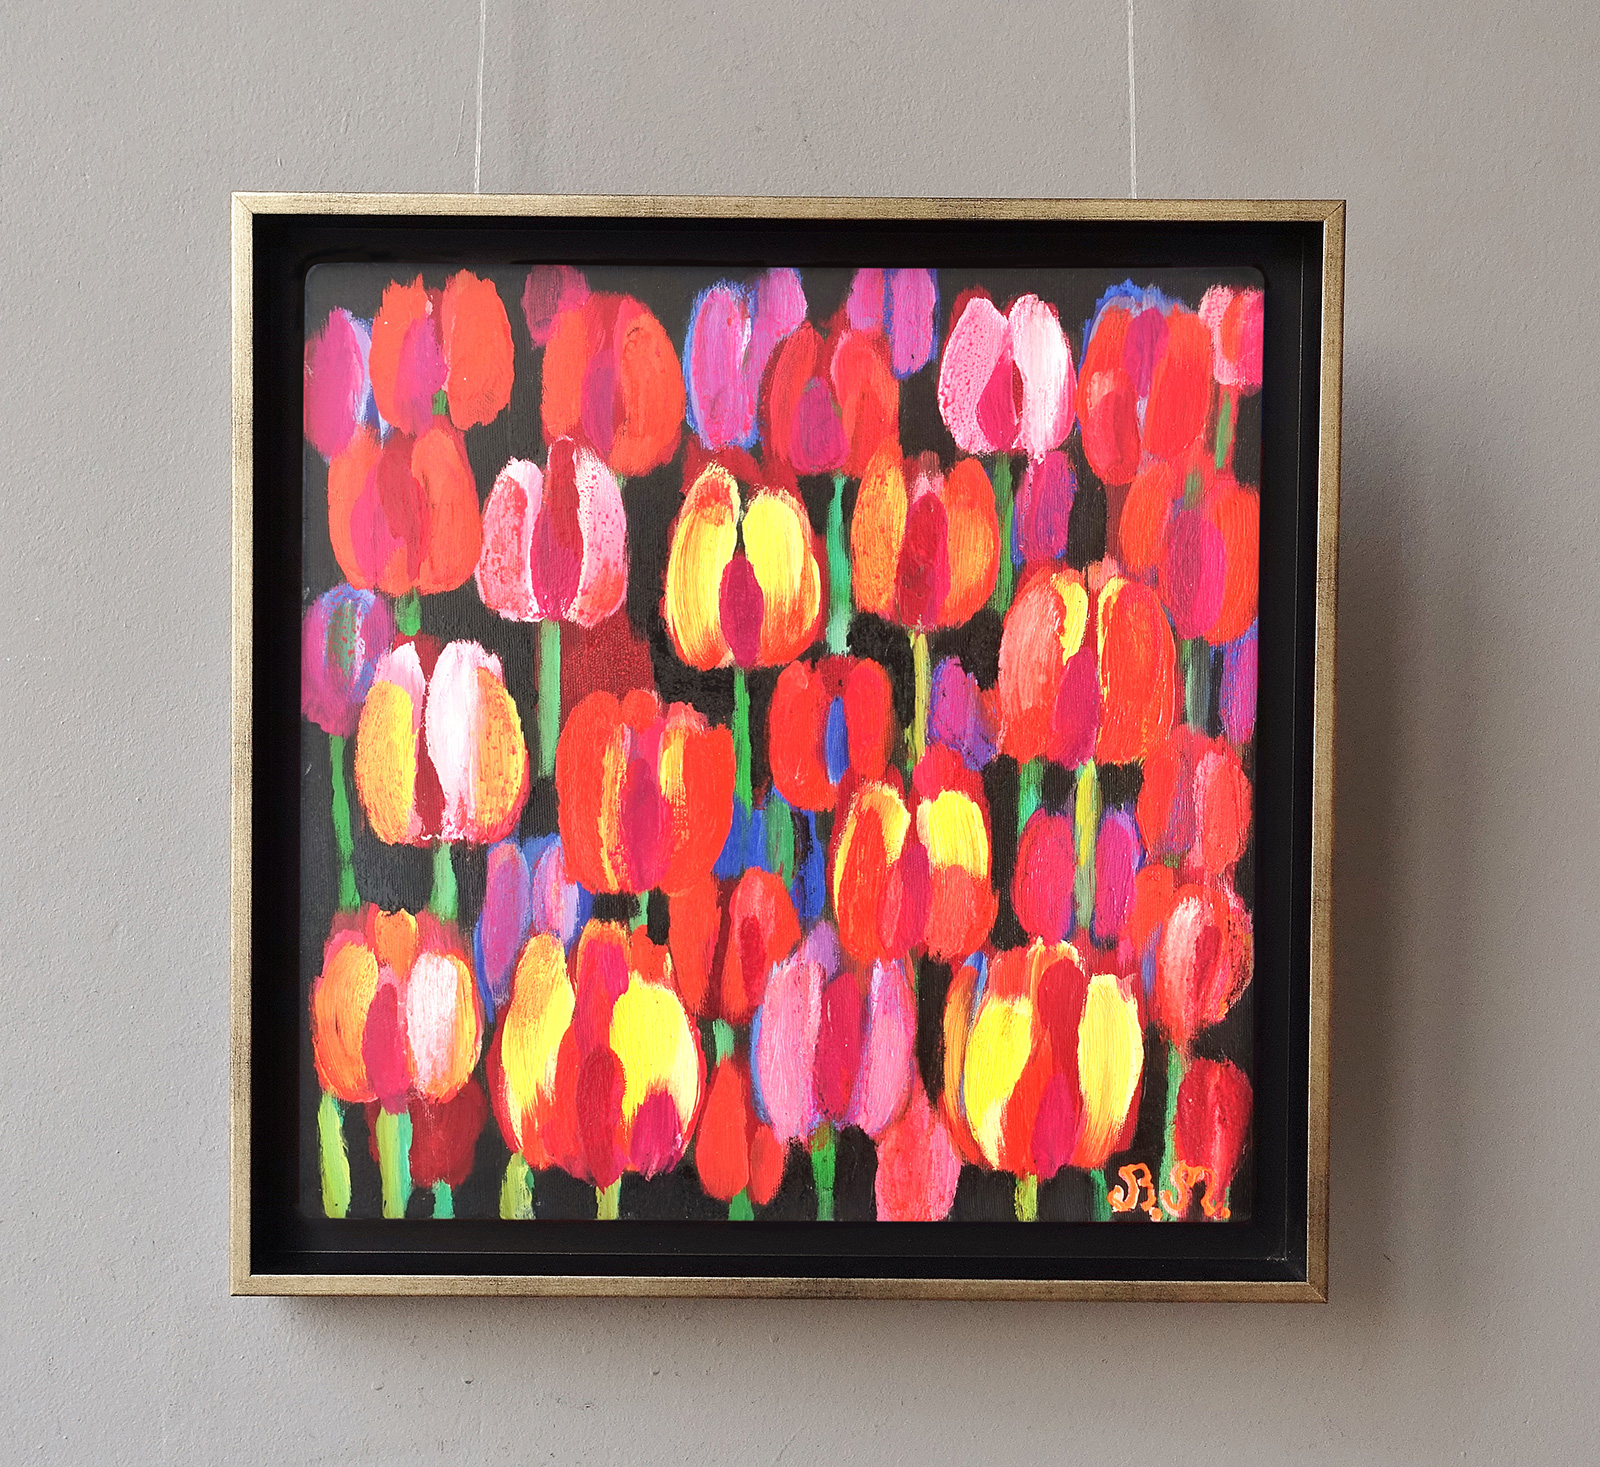 Beata Murawska - Night of tulips